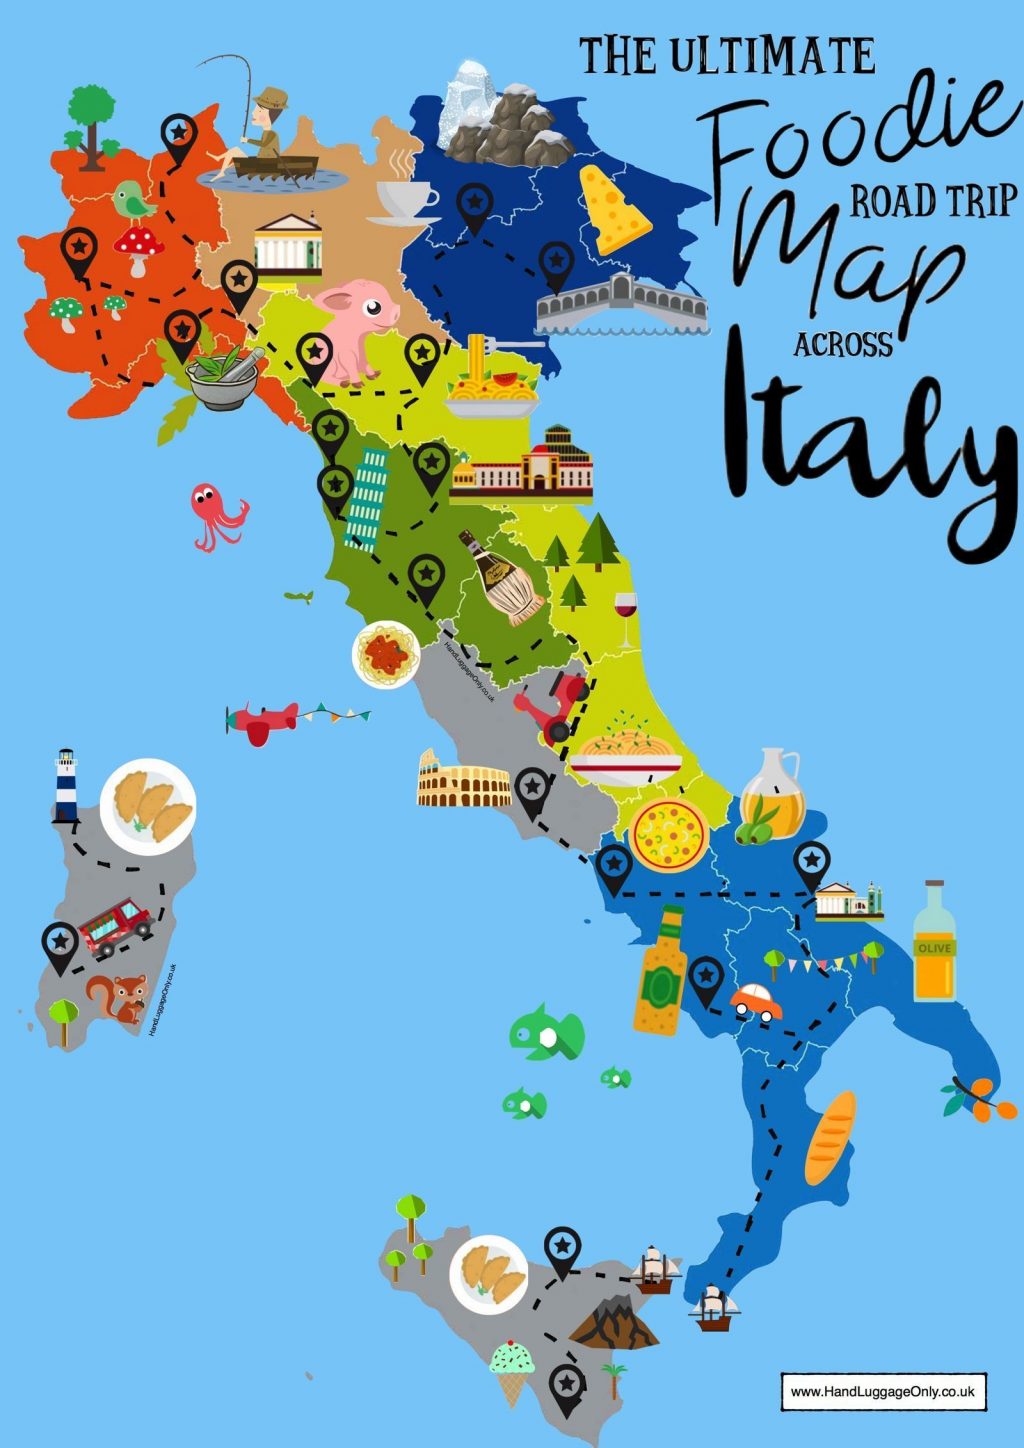 Mapa Italia Regiones